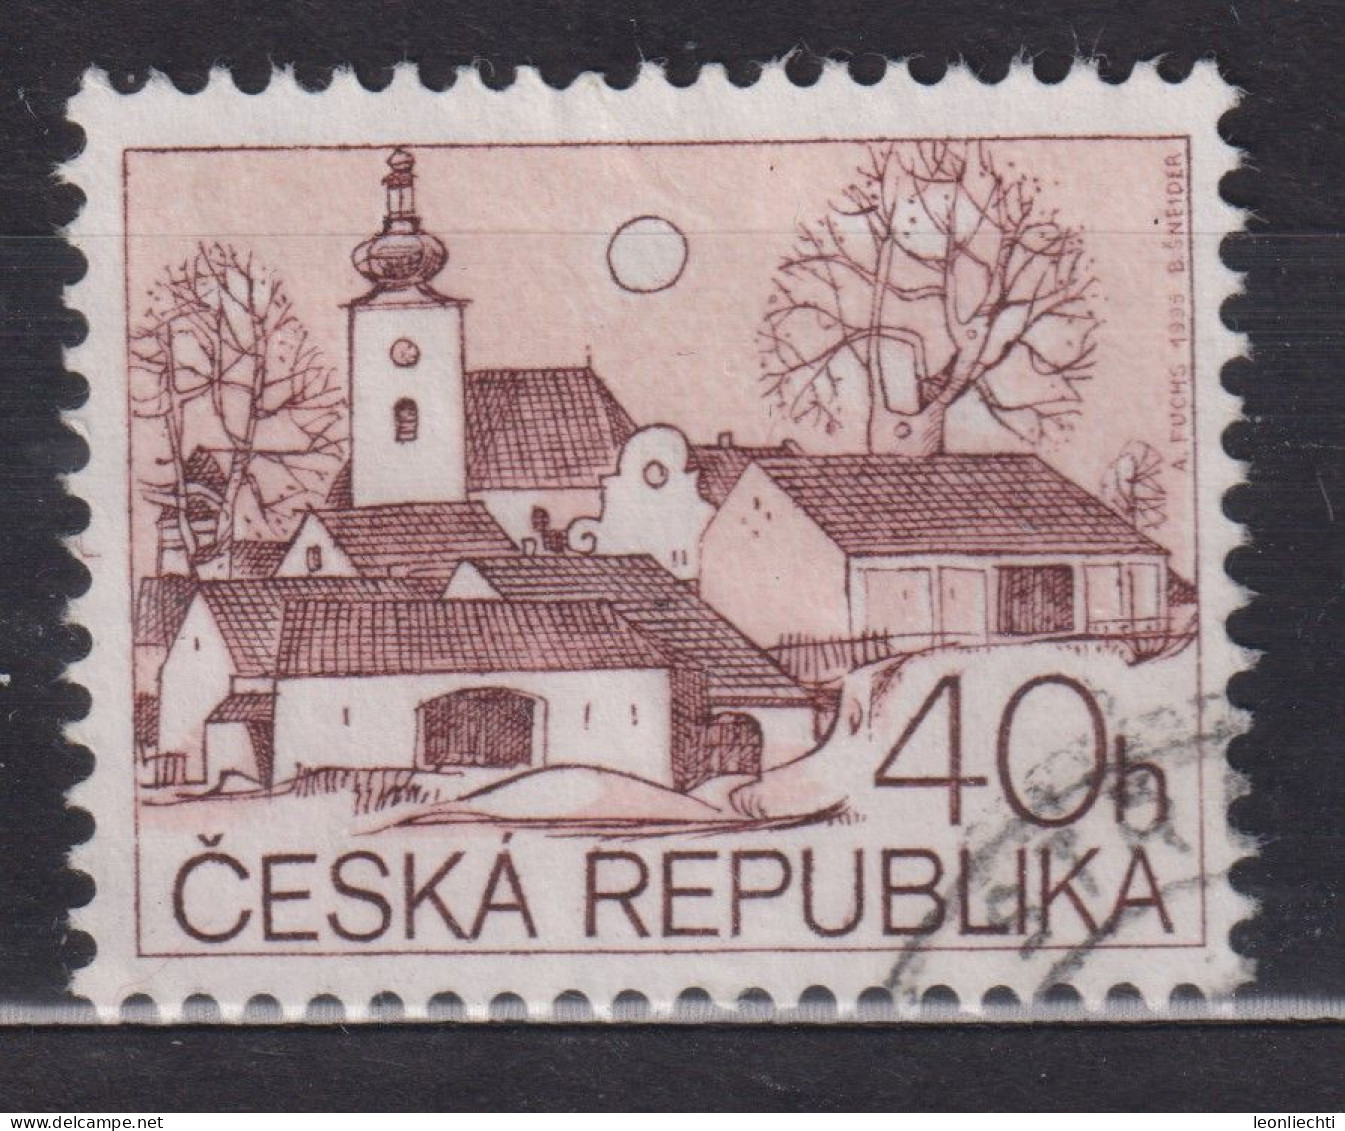 1995 Tschechische Republik Mi:CZ 71, Sn:CZ 2949, Yt:CZ 70, Village Church, Dorfkirche - Usati